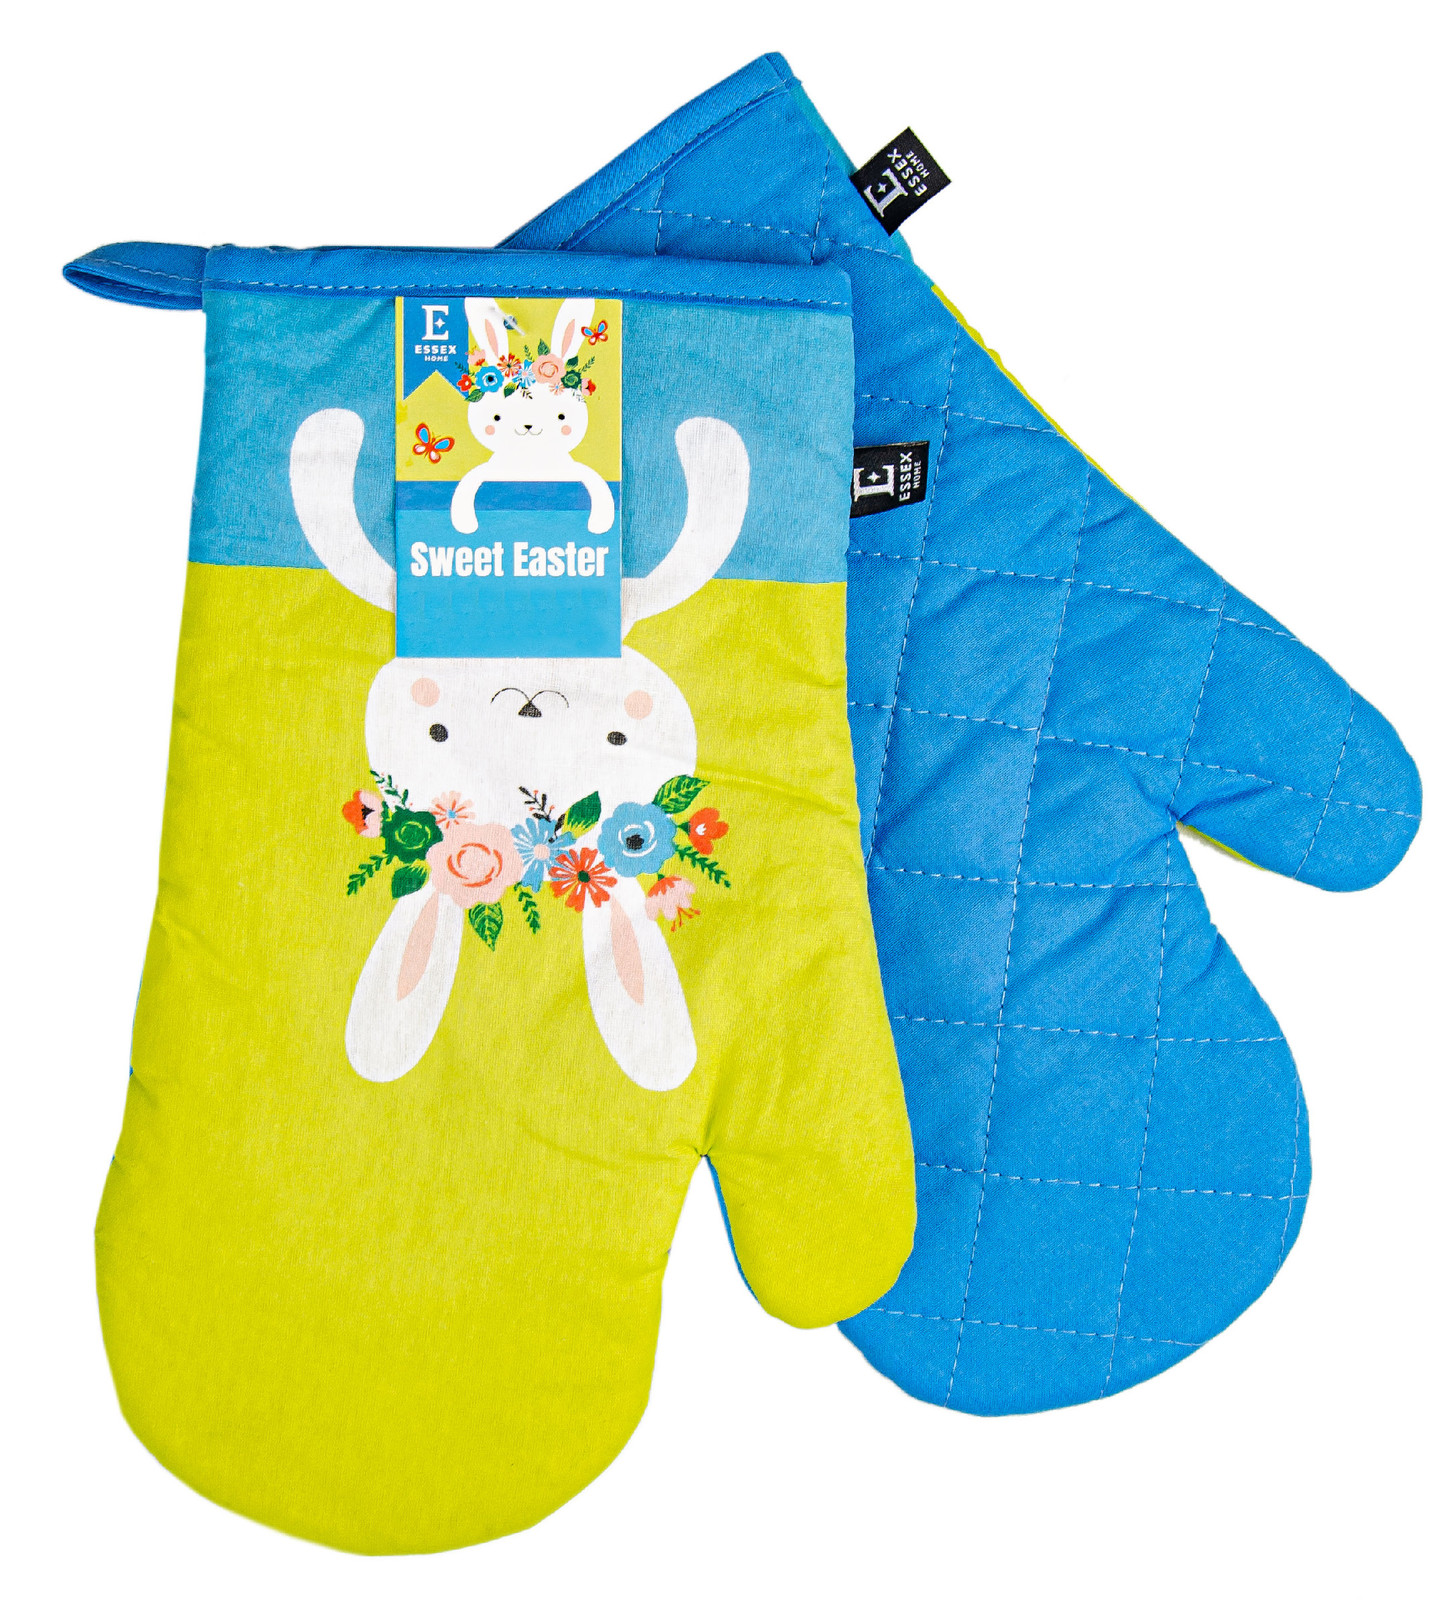 Kuchyňské bavlněné rukavice - chňapky SWEET EASTER 100% bavlna 19x30 cm Balení 2 kusy - levá a pravá rukavice.